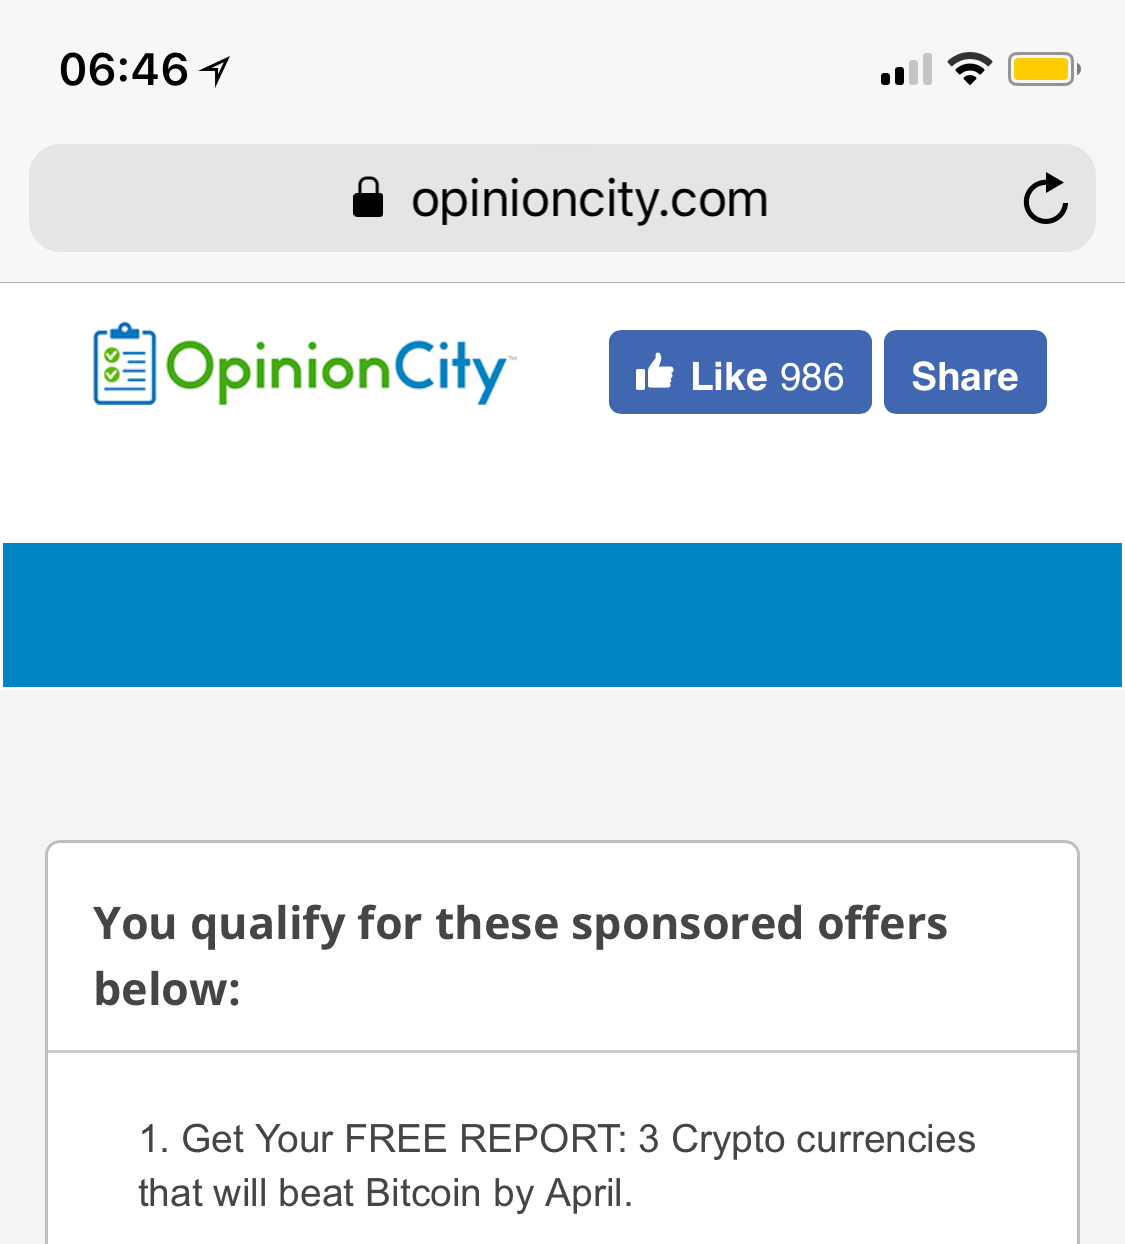 Host website OpinionCity.com